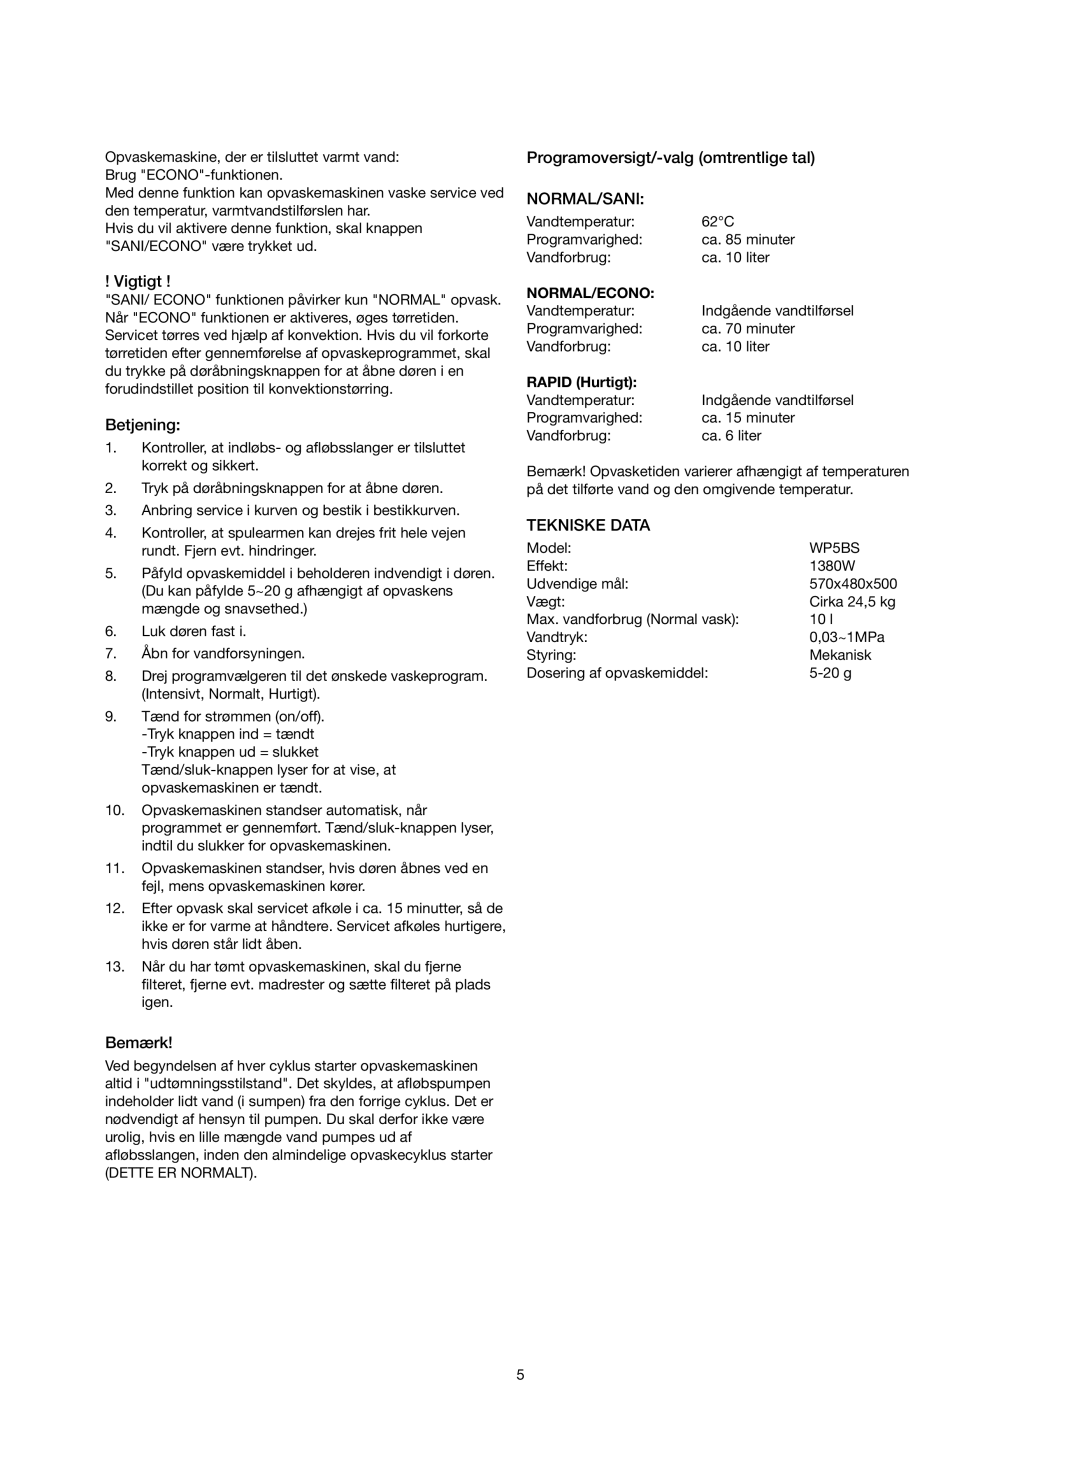 Melissa 758-007 Betjening, Bemærk, Programoversigt/-valgomtrentlige tal NORMAL/SANI, Tekniske Data, Normal/Econo, Vigtigt 